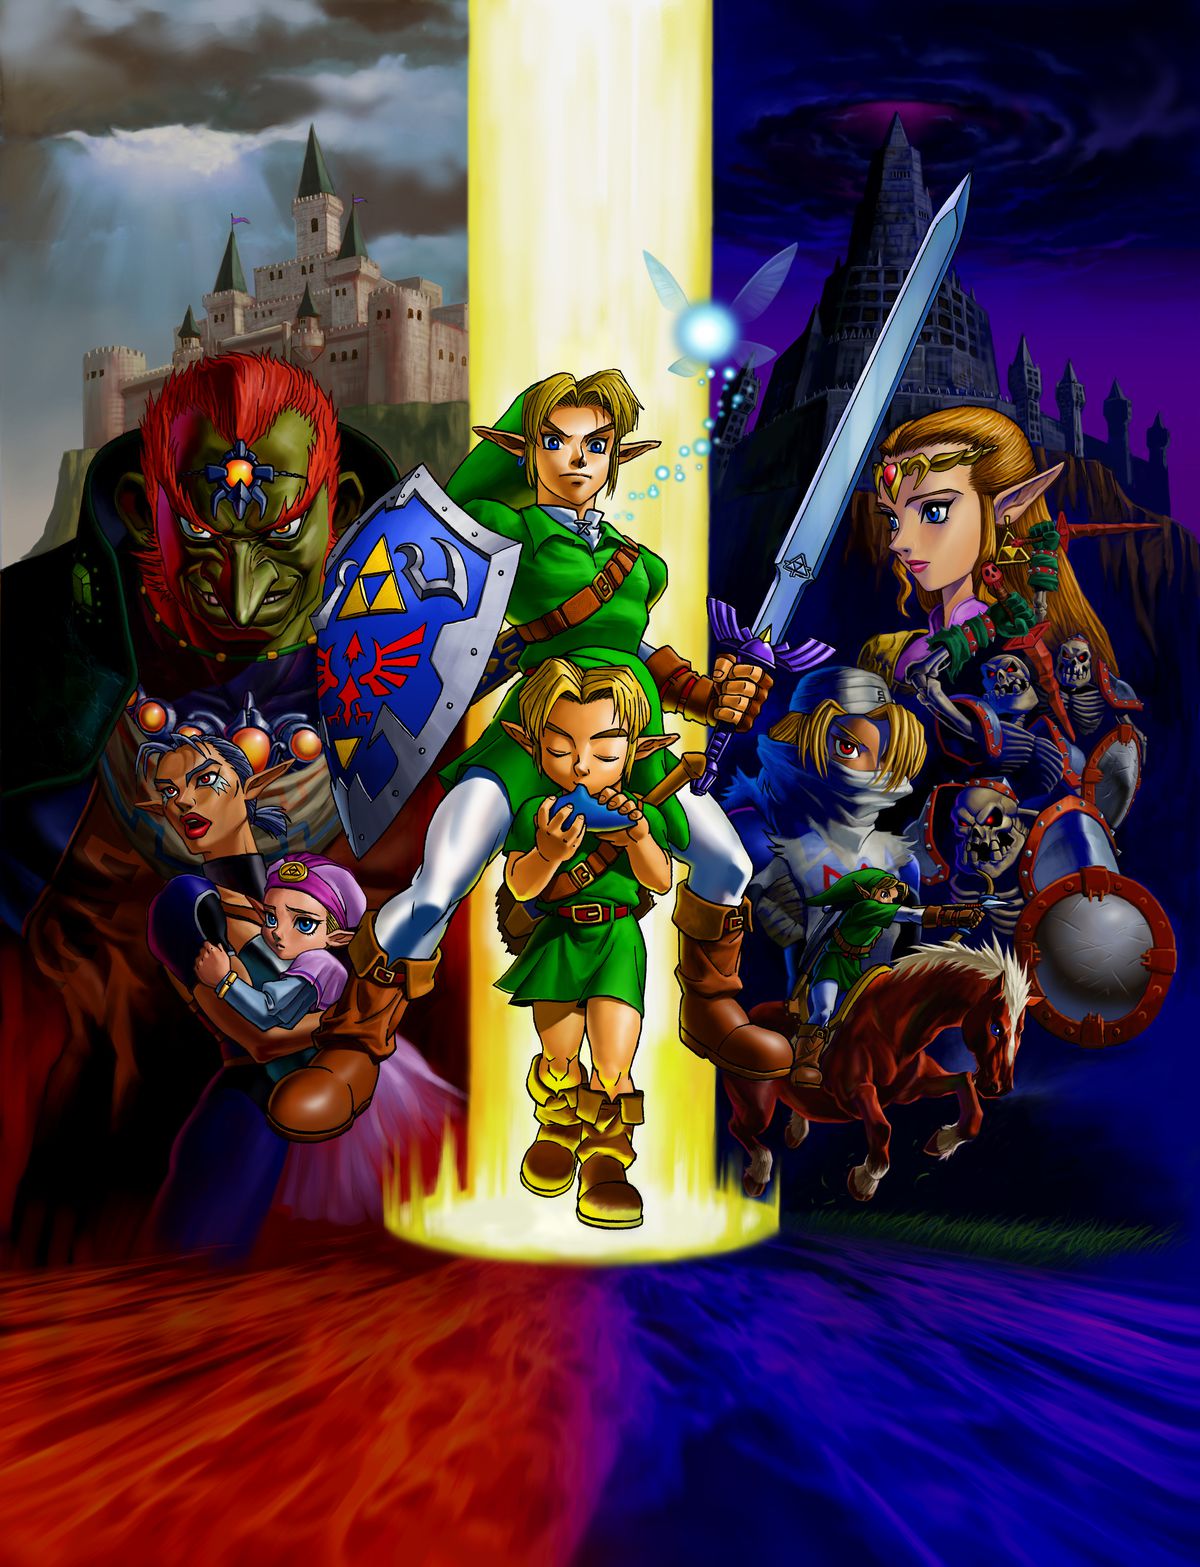 Illustration montrant tous les personnages principaux de Zelda : Ocarina of Time, y compris Link enfant et adulte au centre. 